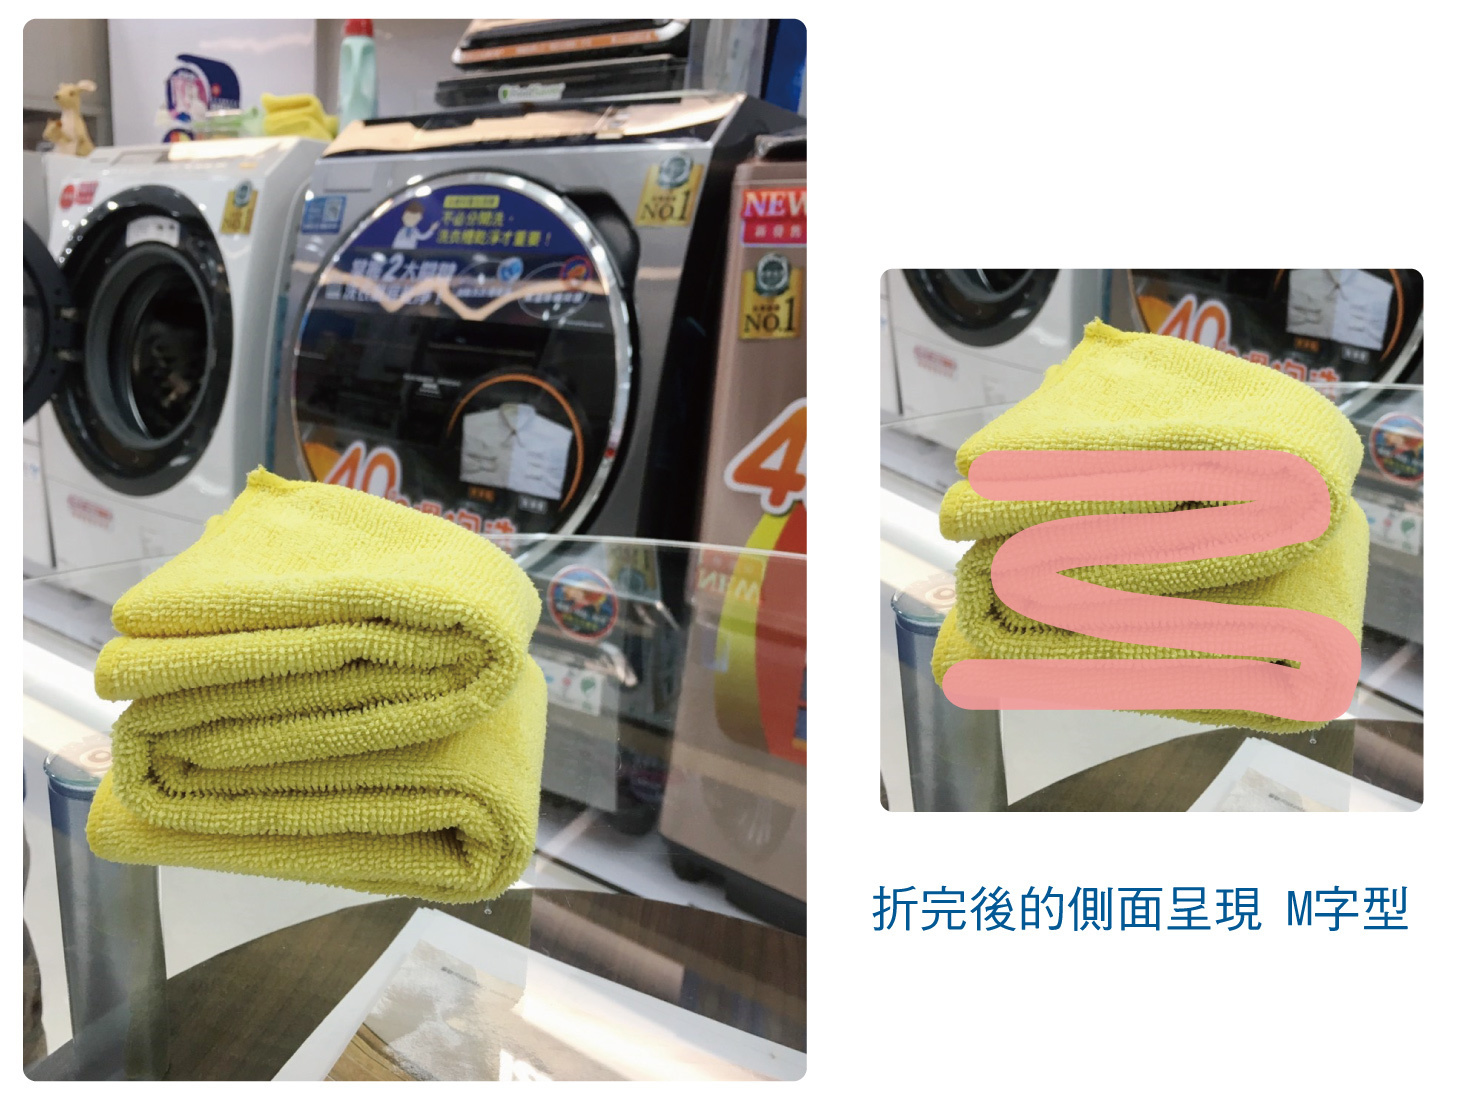 【挑戰極限】測試Panasonic 日製 滾筒洗衣機NA-VX88的巔峰-趴兔